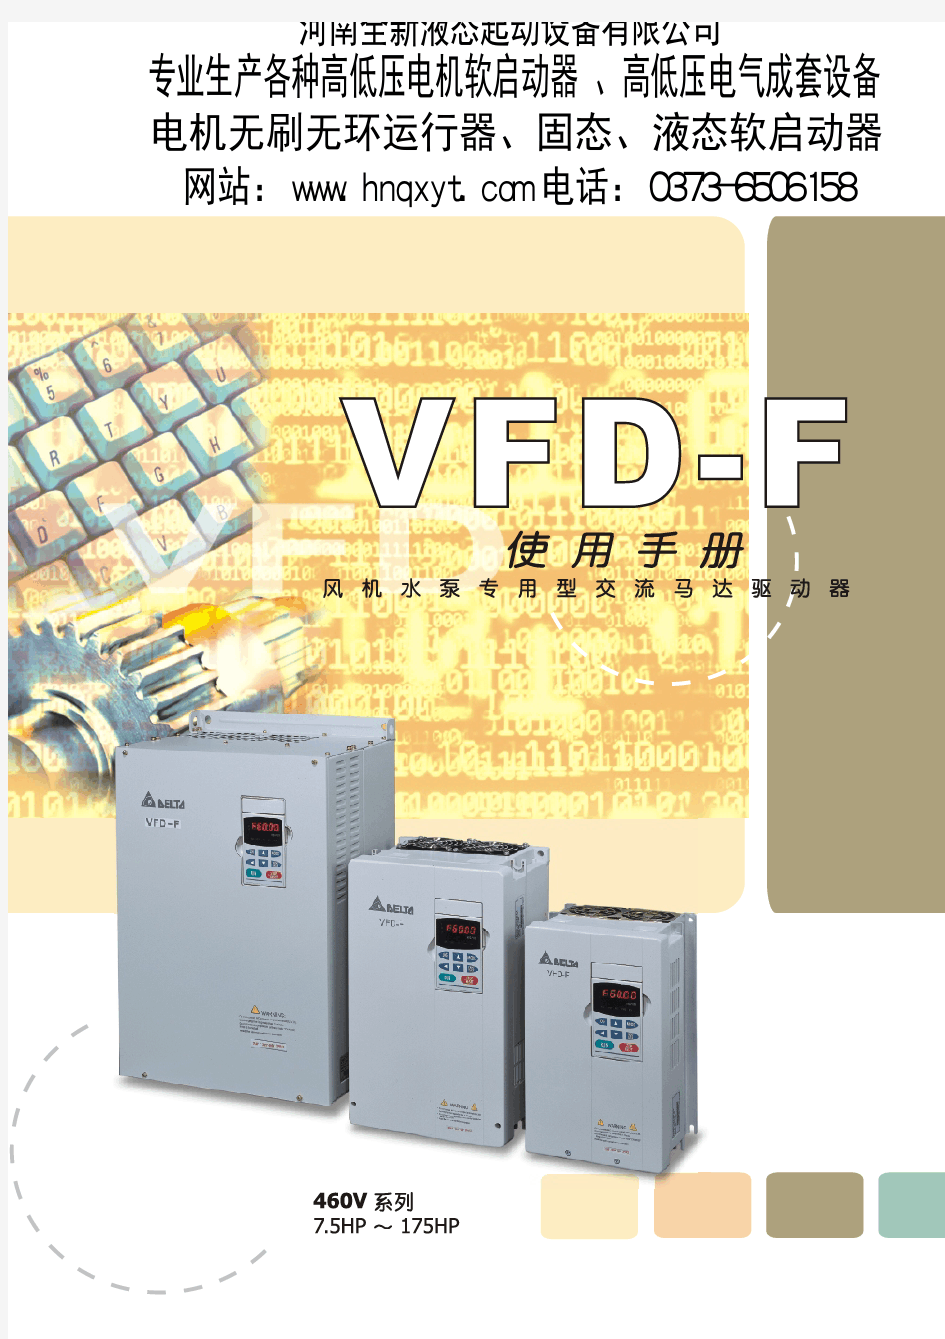 台达变频器说明书VFD-F